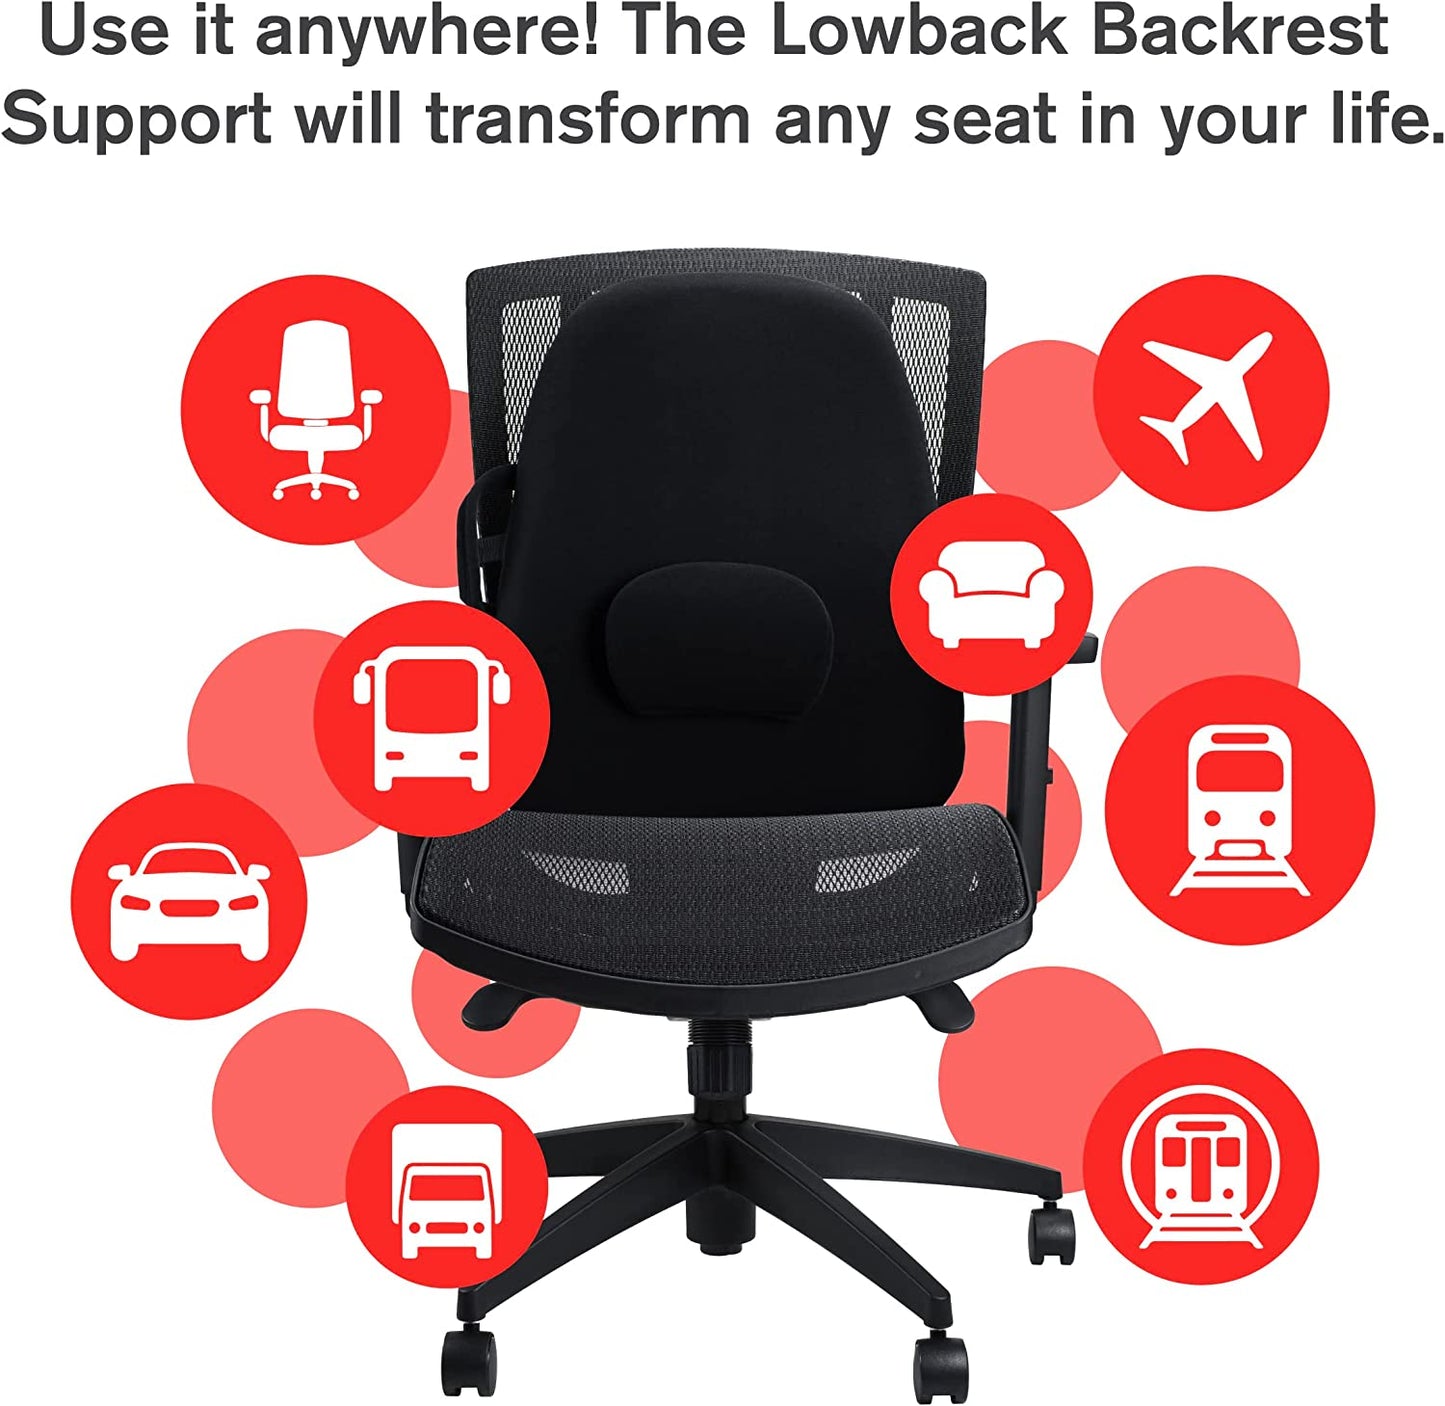 Lowback Backrest Support